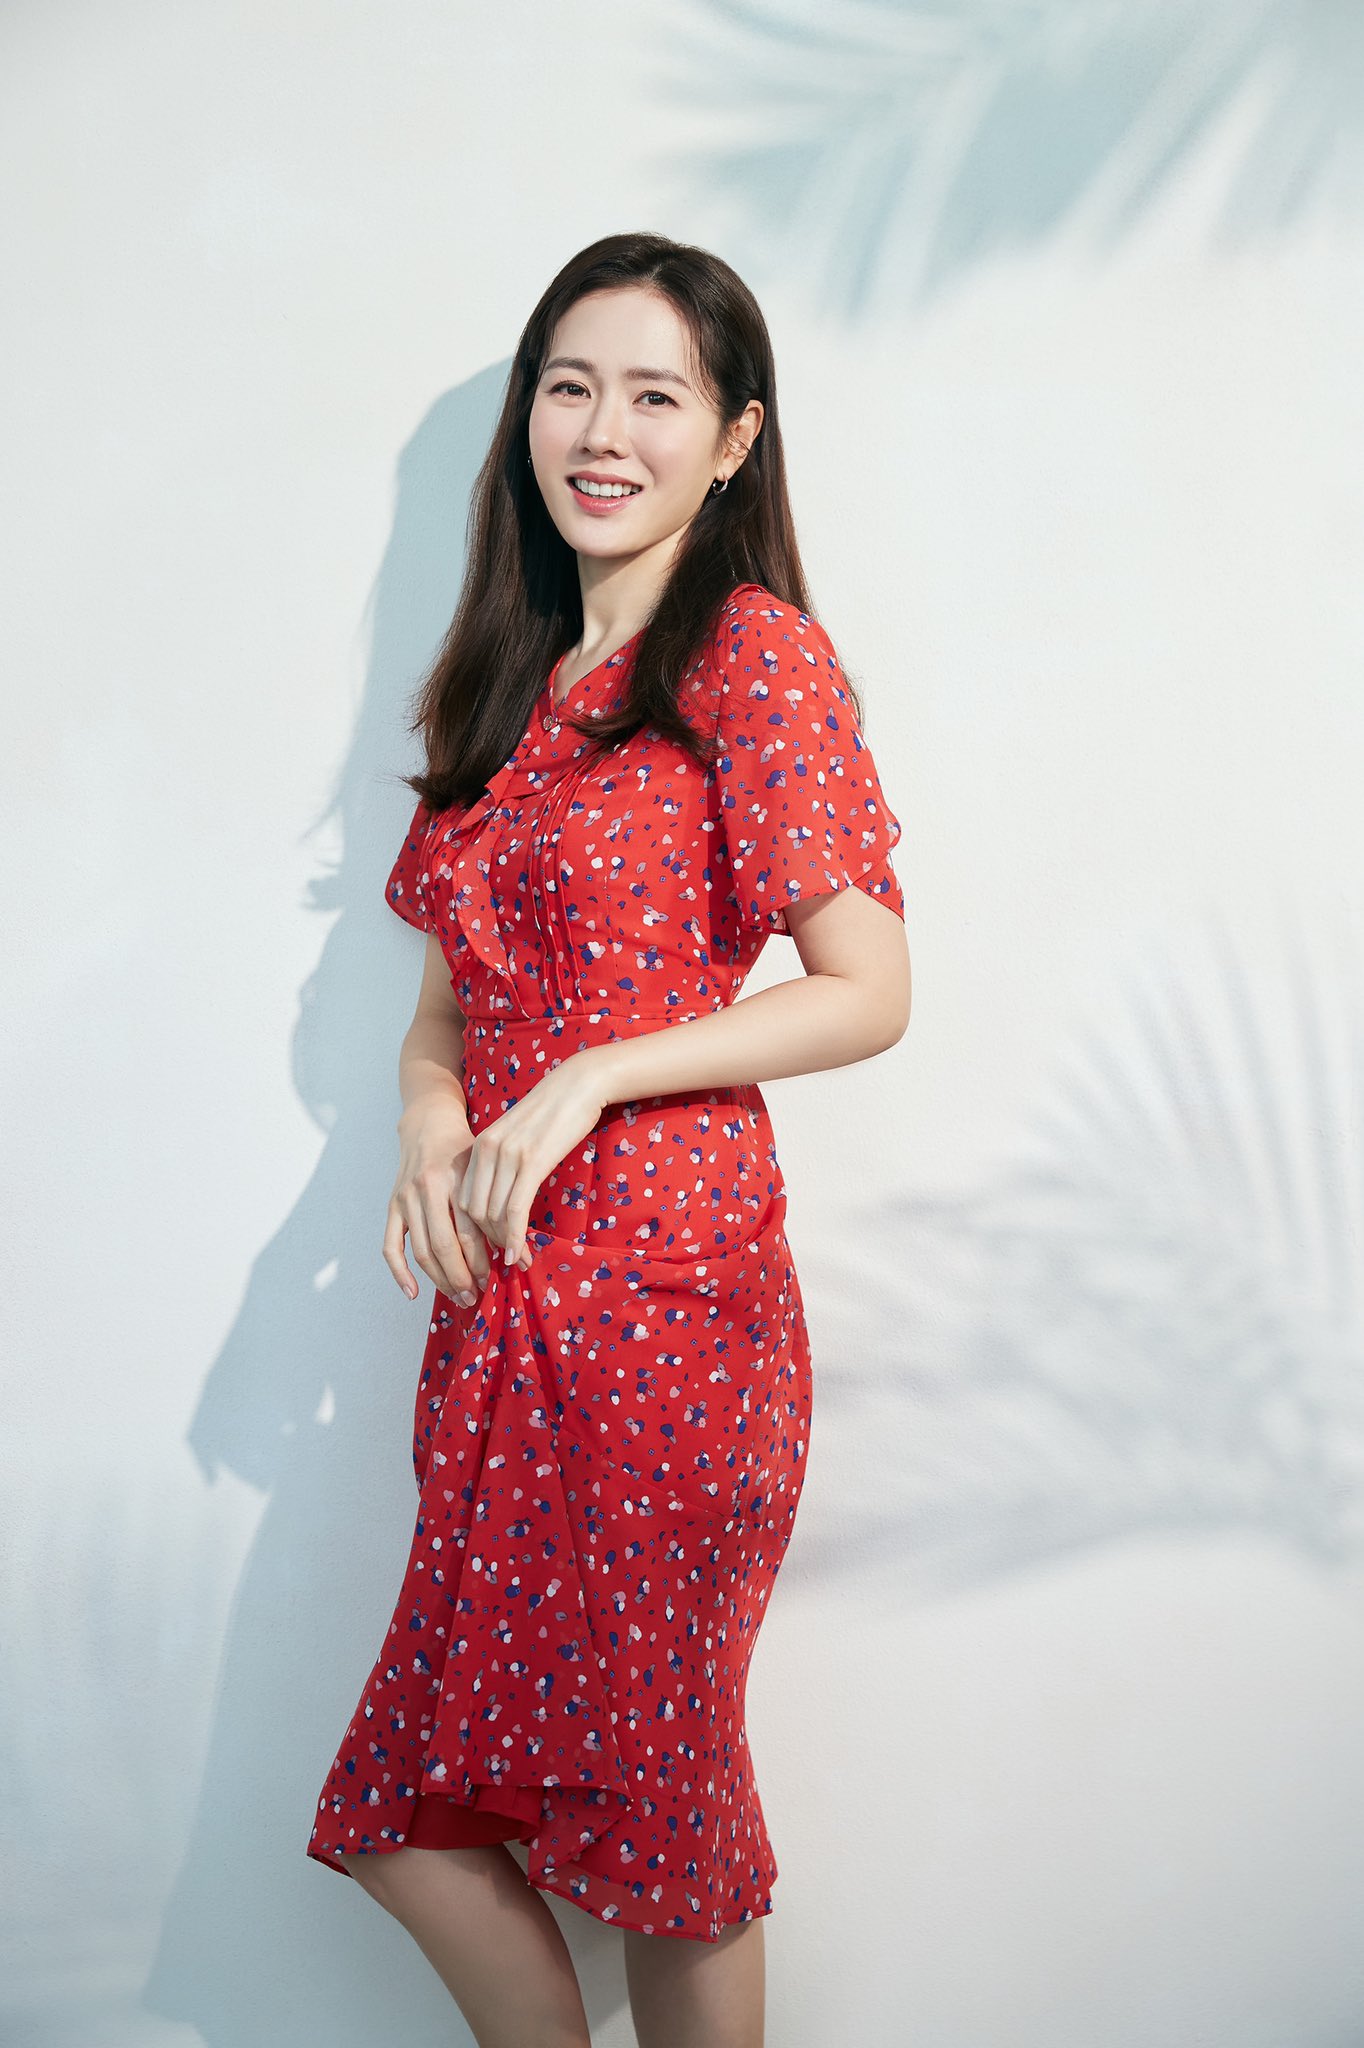 Từ trong phim ra ngoài đời, Son Ye Jin đều tích cực diện một mẫu váy